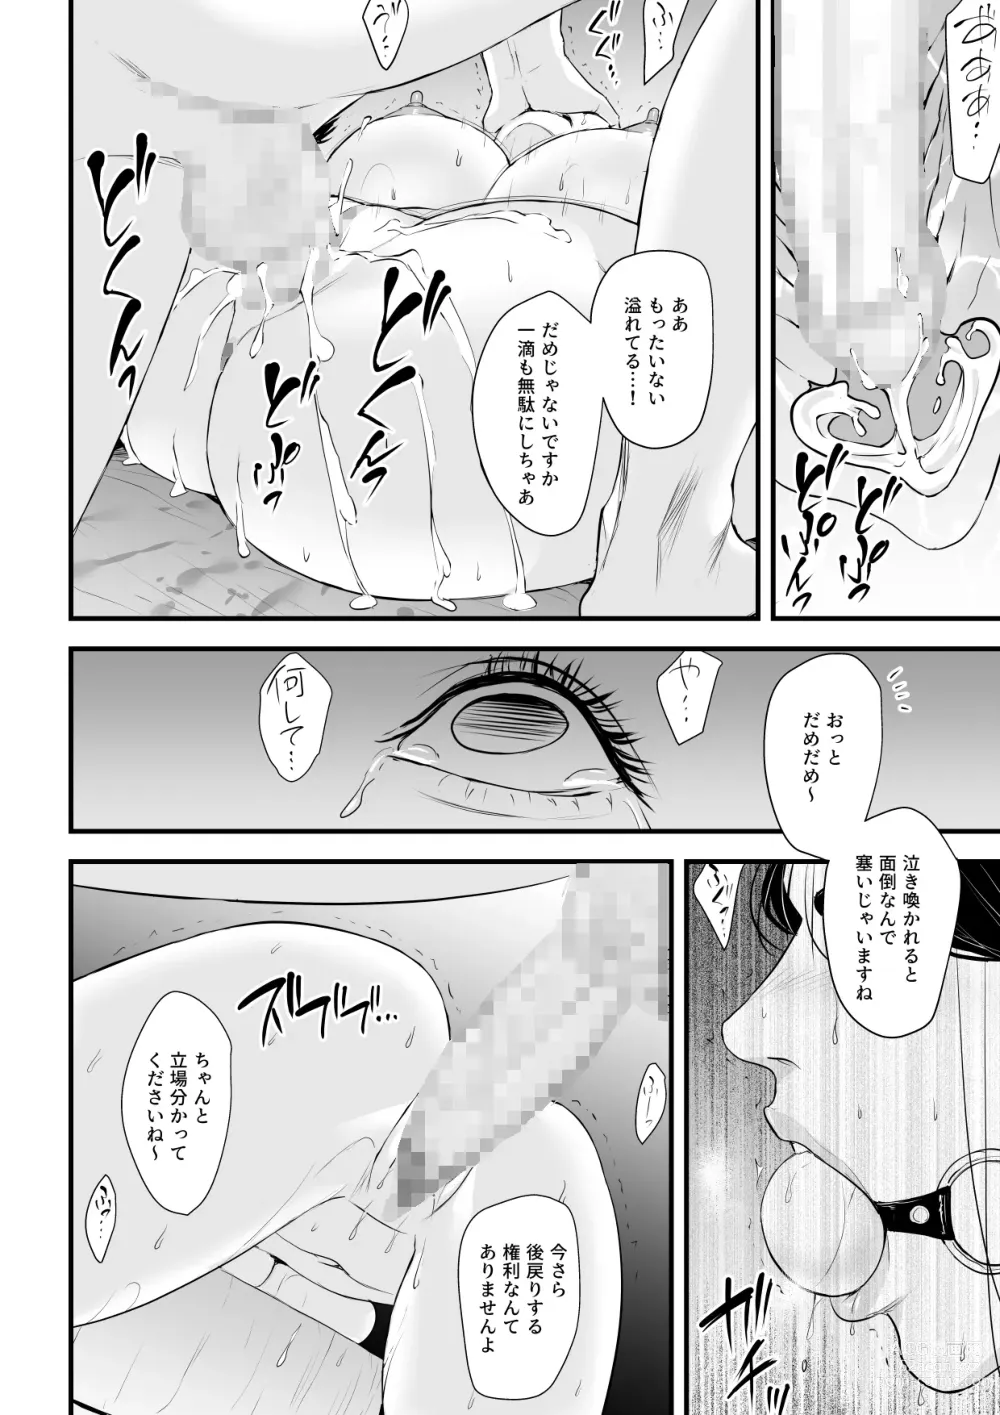 Page 73 of doujinshi Erito onnakachouwa kukkbokusaseraretai